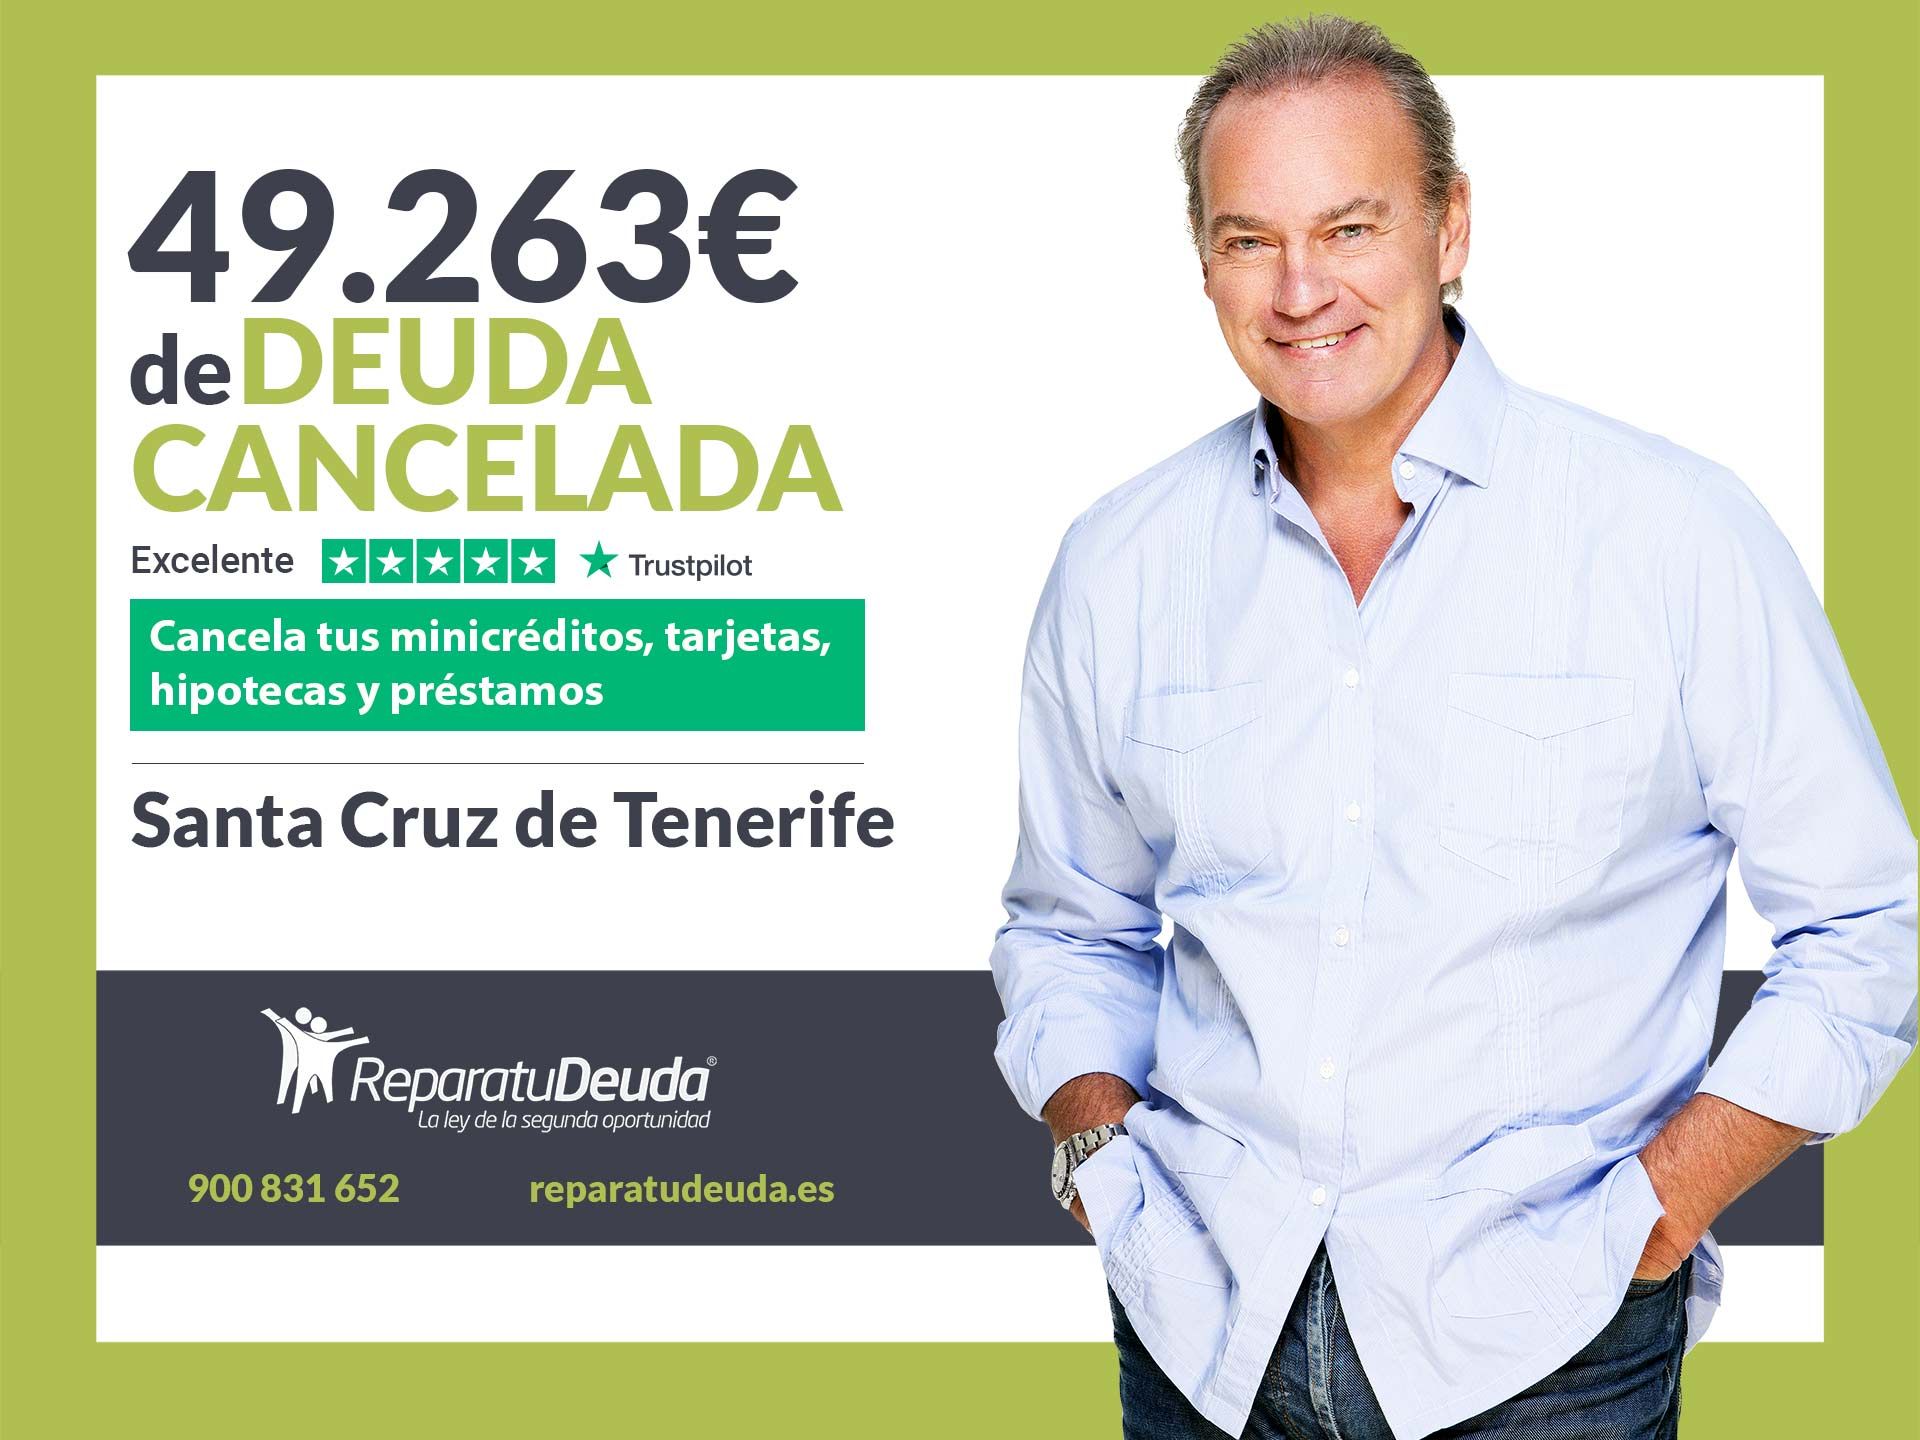 Repara tu Deuda Abogados cancela 49.263? en Tenerife (Canarias) con la Ley de Segunda Oportunidad